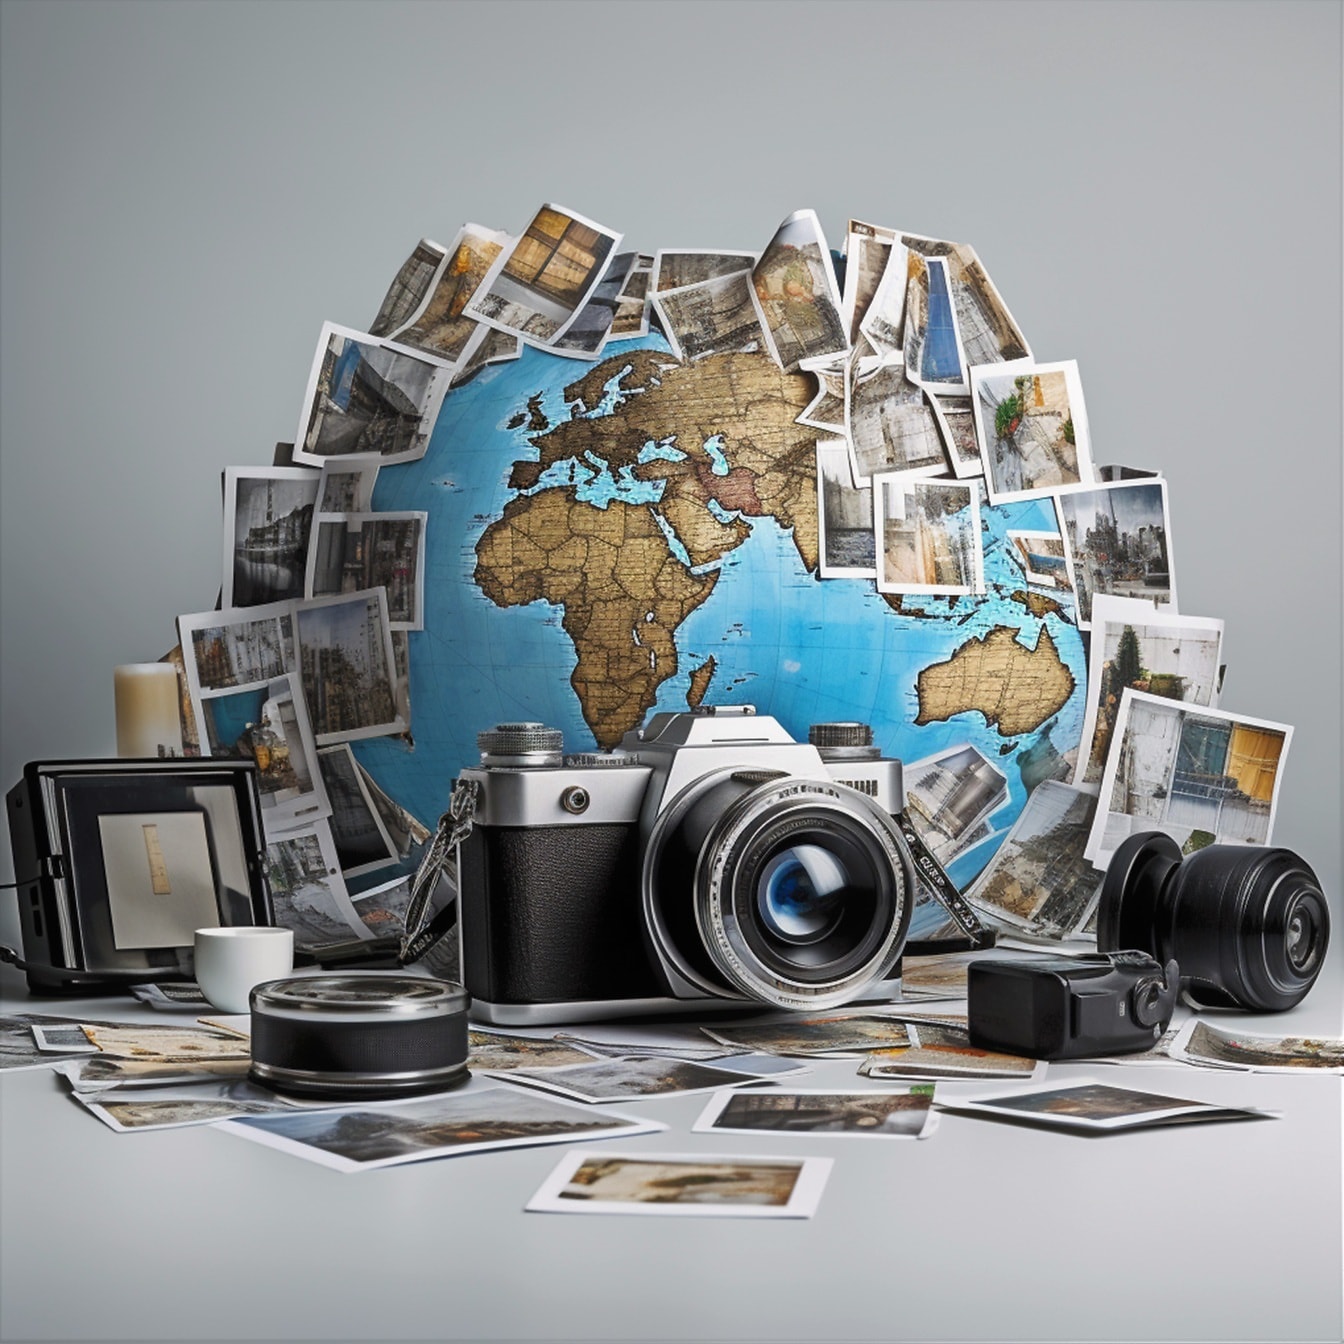 Banco de imagens gratuito de fotografia digital e analógica